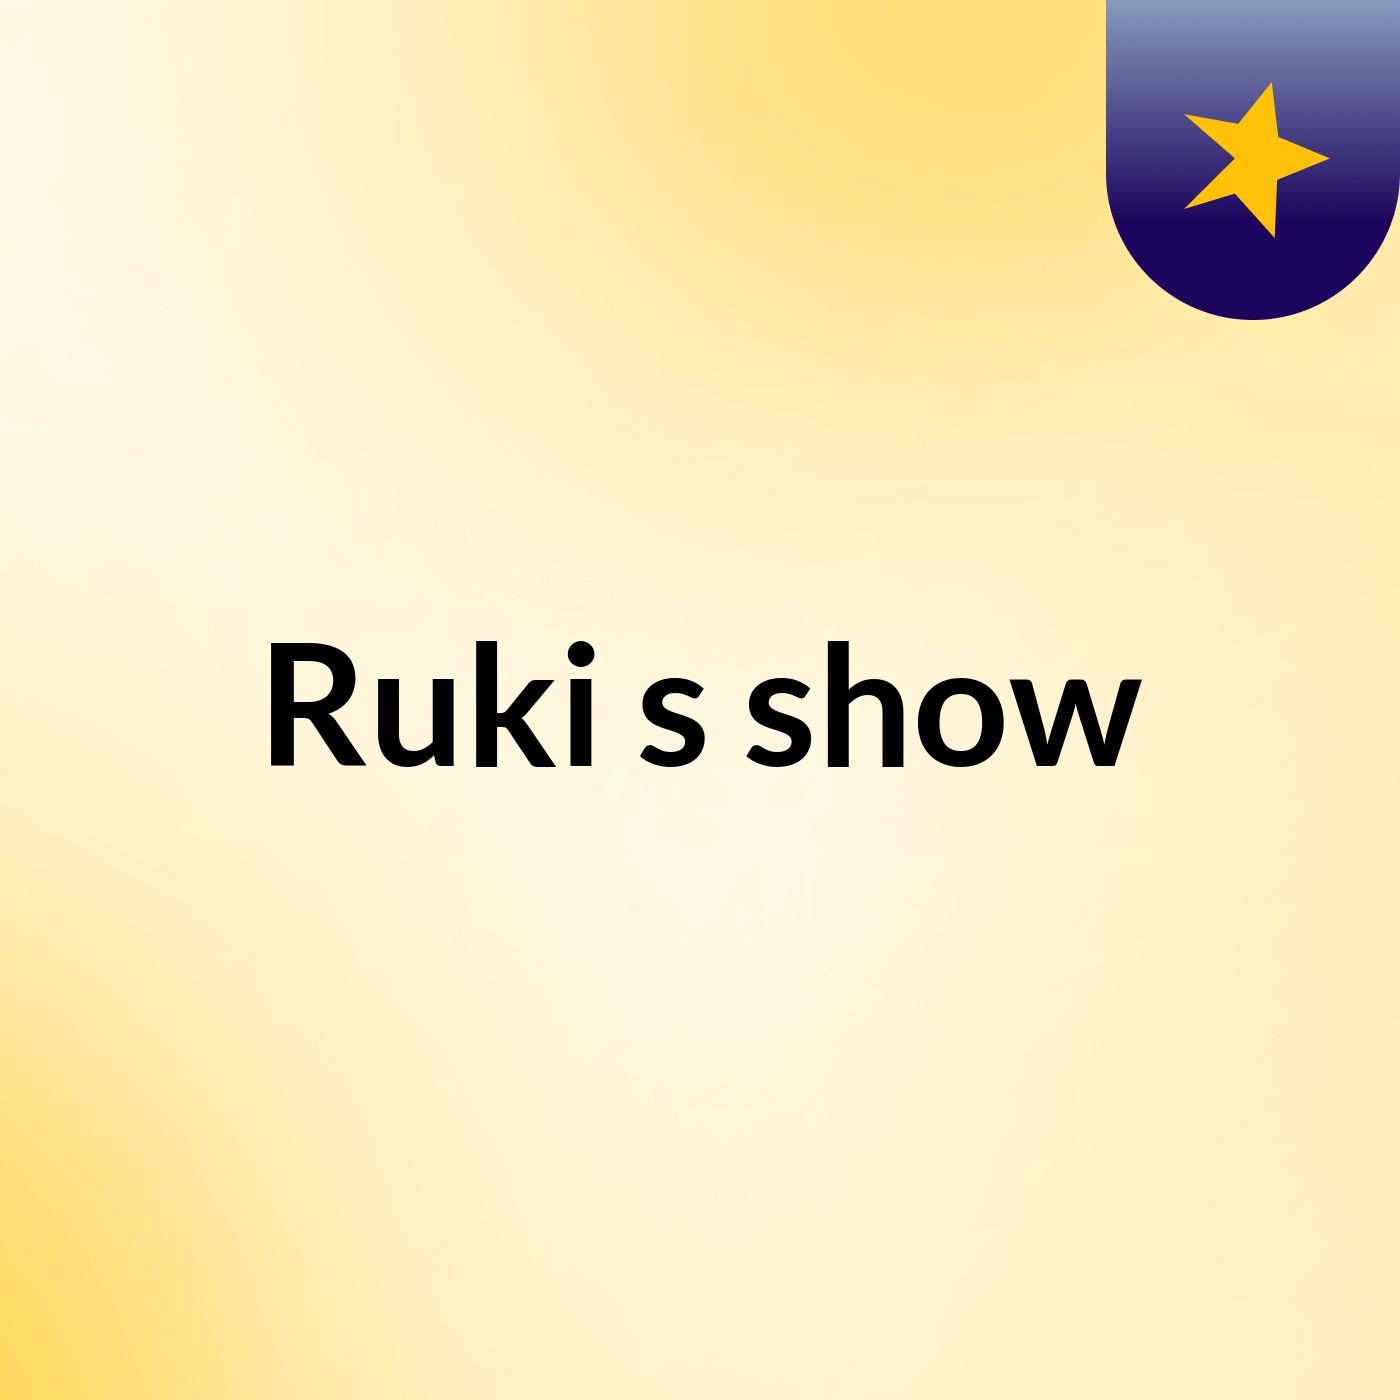 Ruki's show